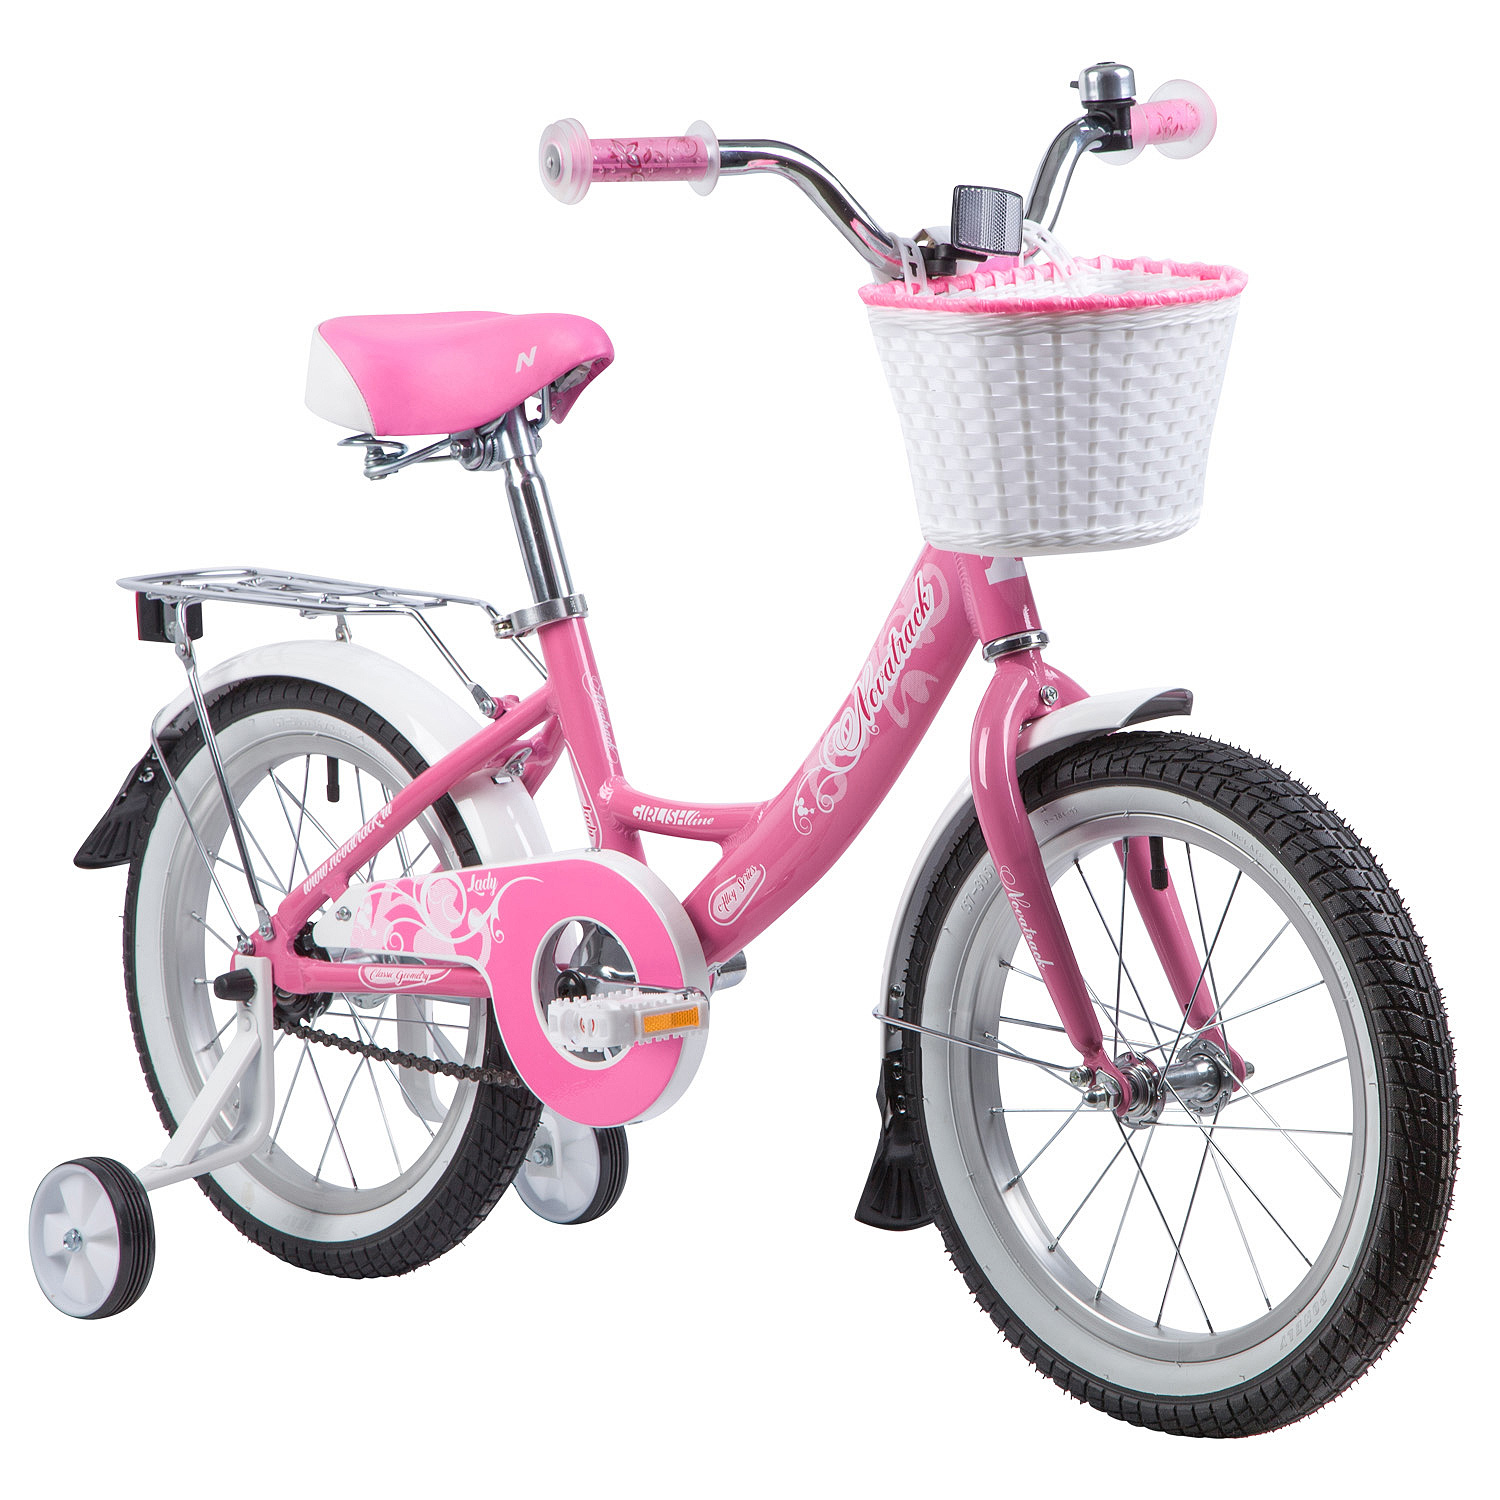 Велосипед для девочек купить авито. Велосипед Novatrack girlish line 16. Велосипед двухколесный Новатрек 16 розовый. Велосипед Новатрек 16 дюймов розовый. Велосипед Novatrack girlish line 20.